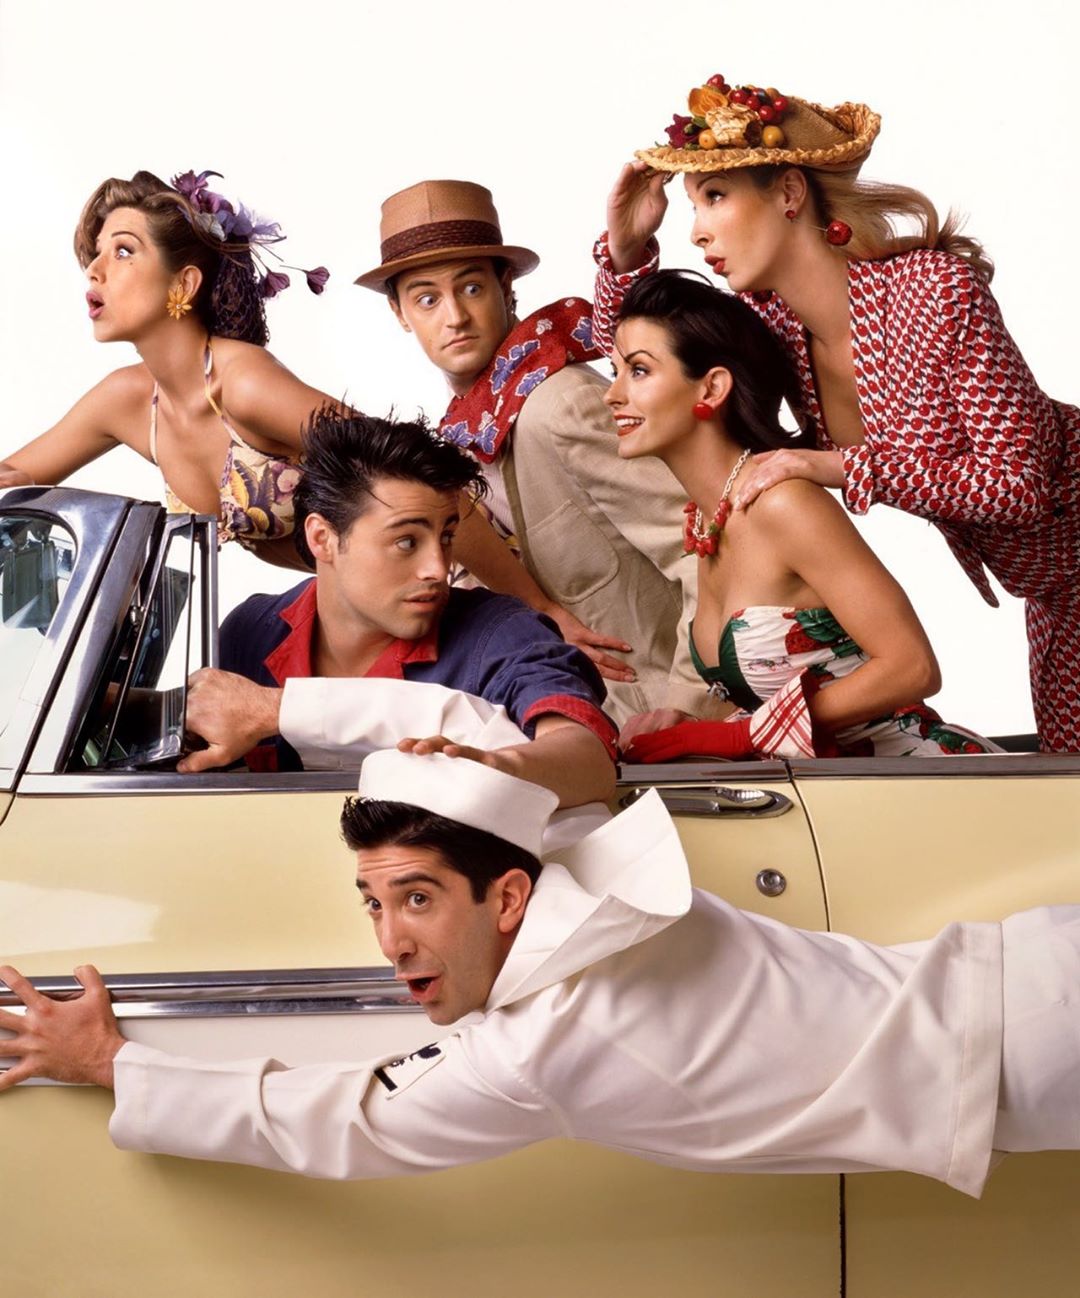 Vuelve Friends: la NBC reunirá a los actores en un especial